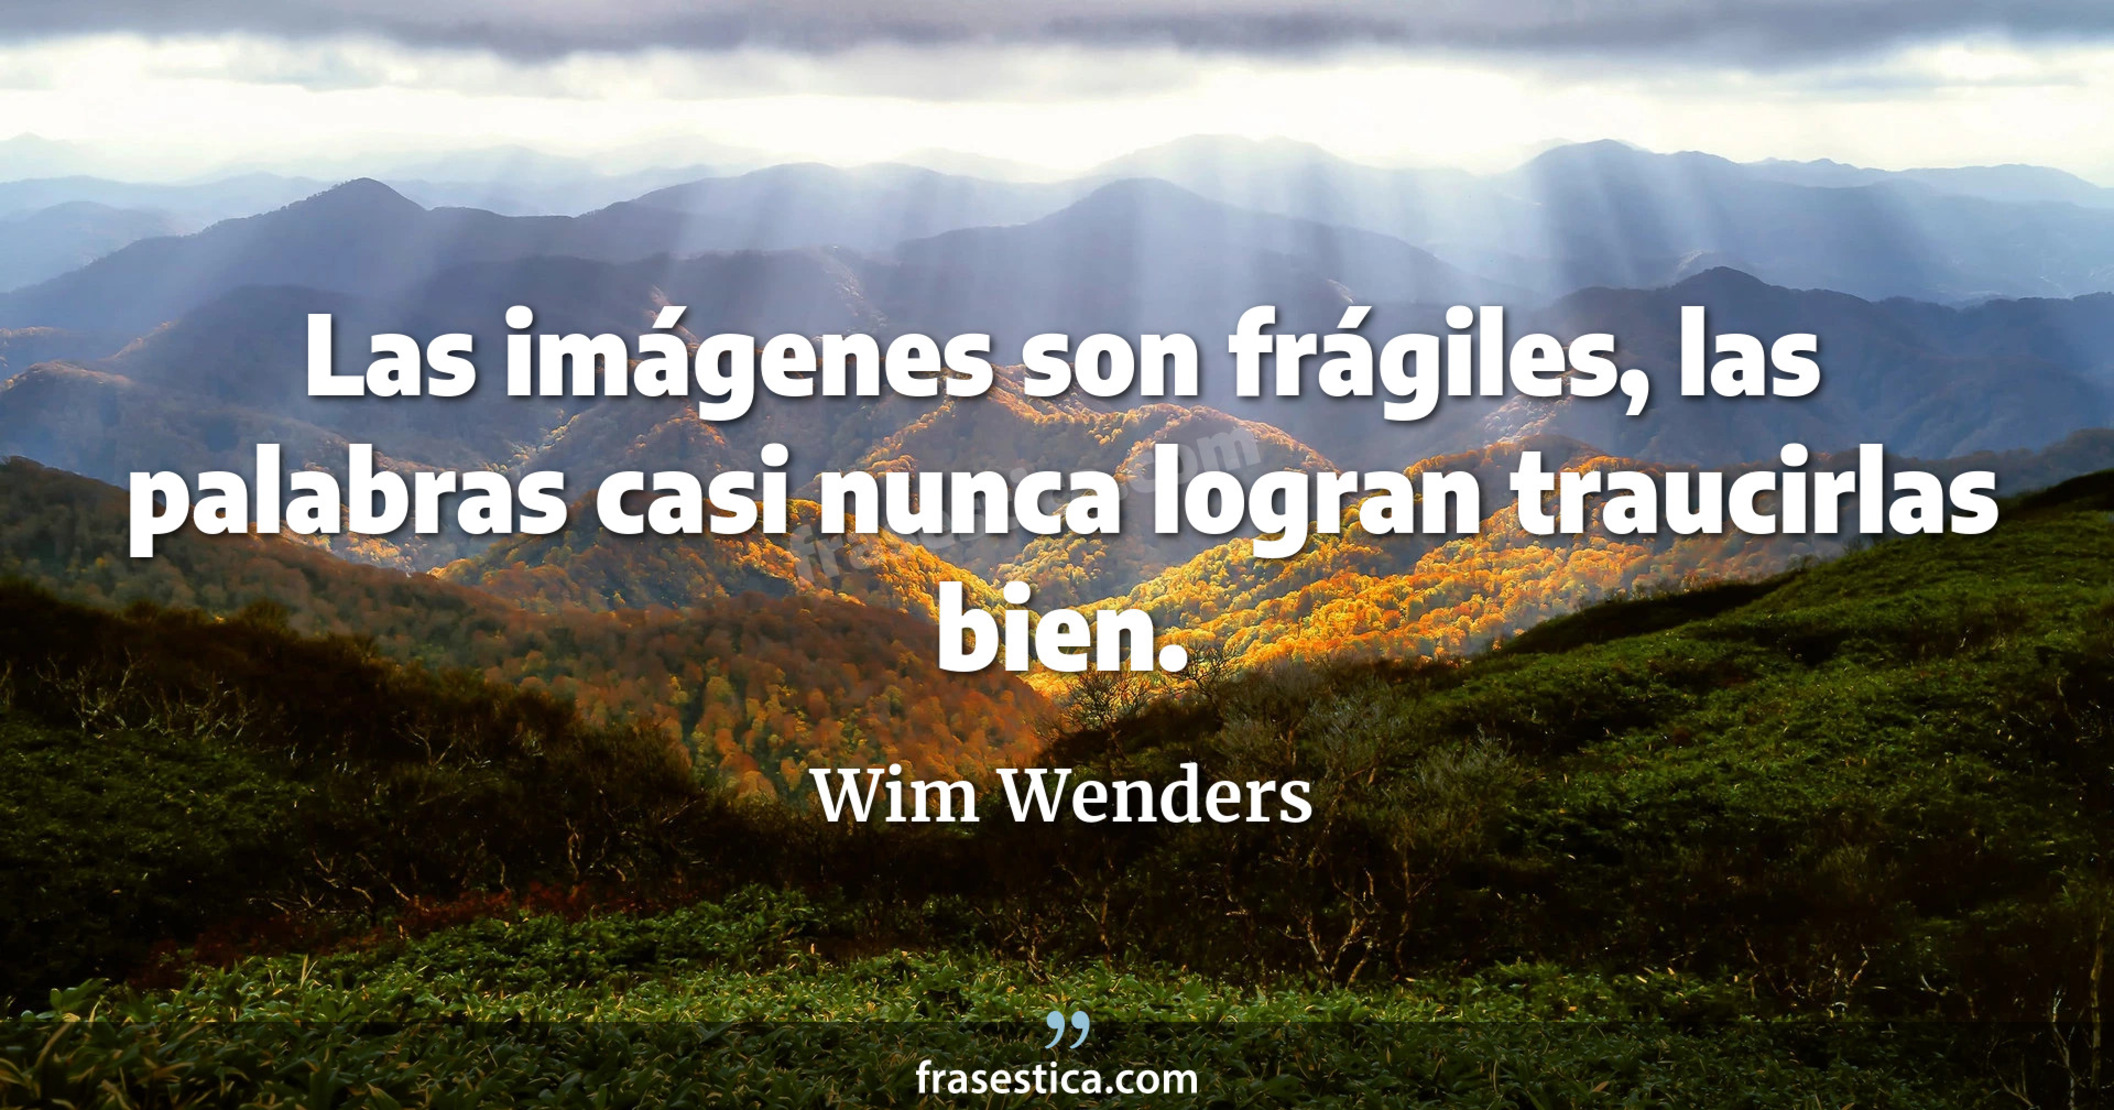 Las imágenes son frágiles, las palabras casi nunca logran traucirlas bien. - Wim Wenders